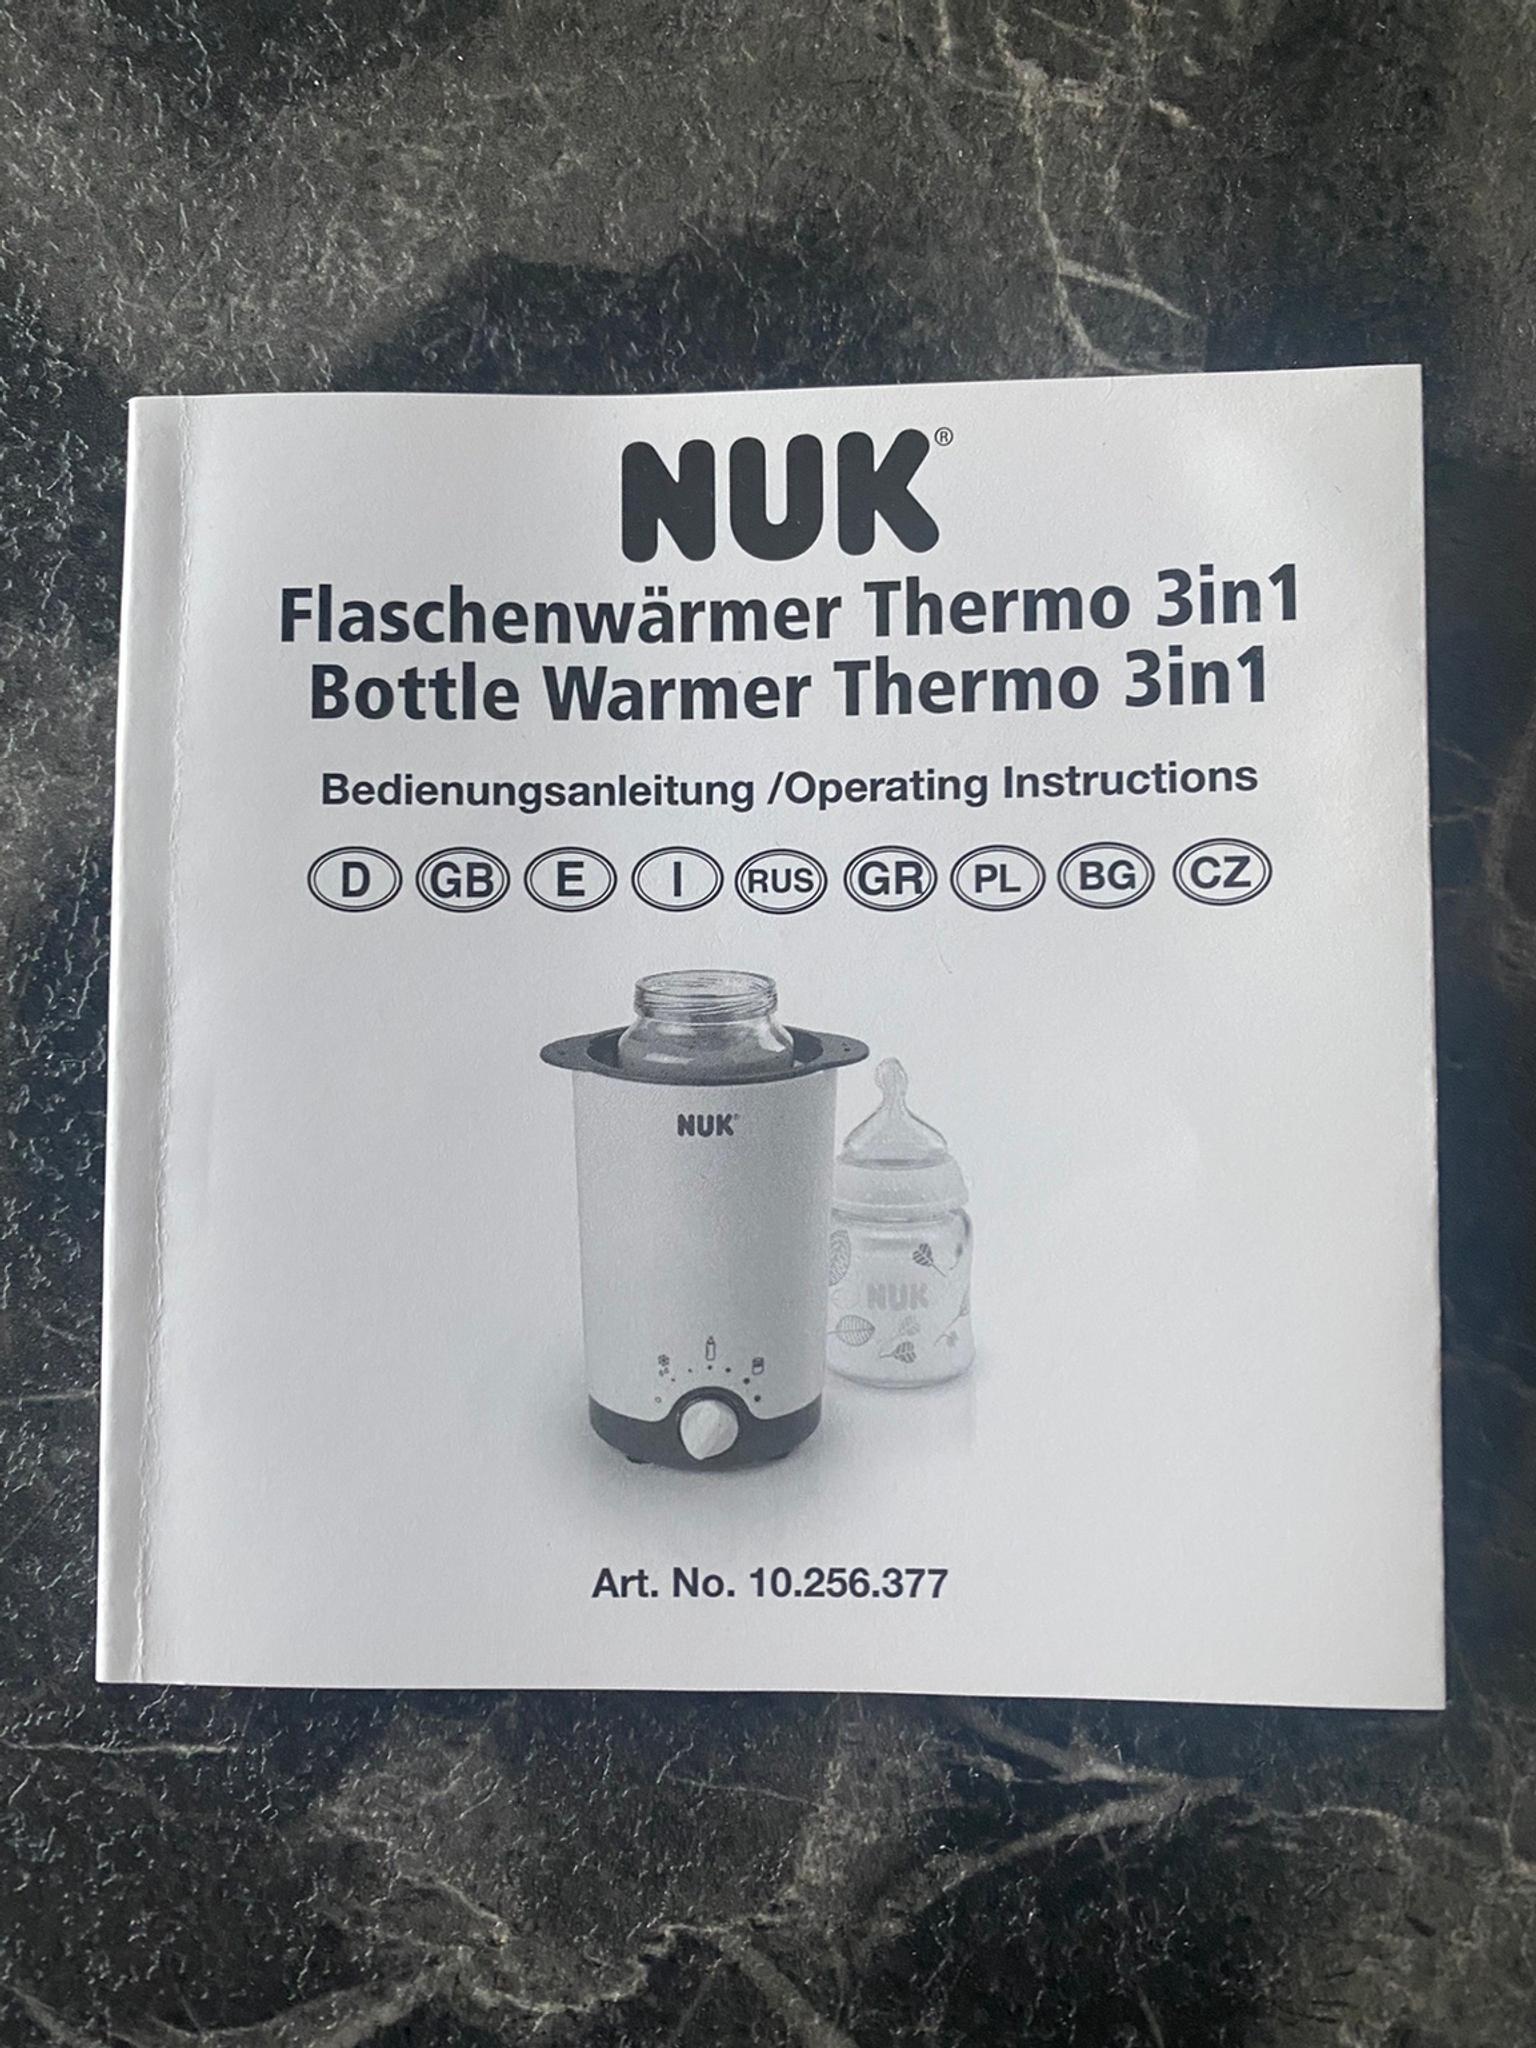 zum einfachen sicheren und schonenden Er NUK Thermo 3 in 1 Flaschenwärmer 